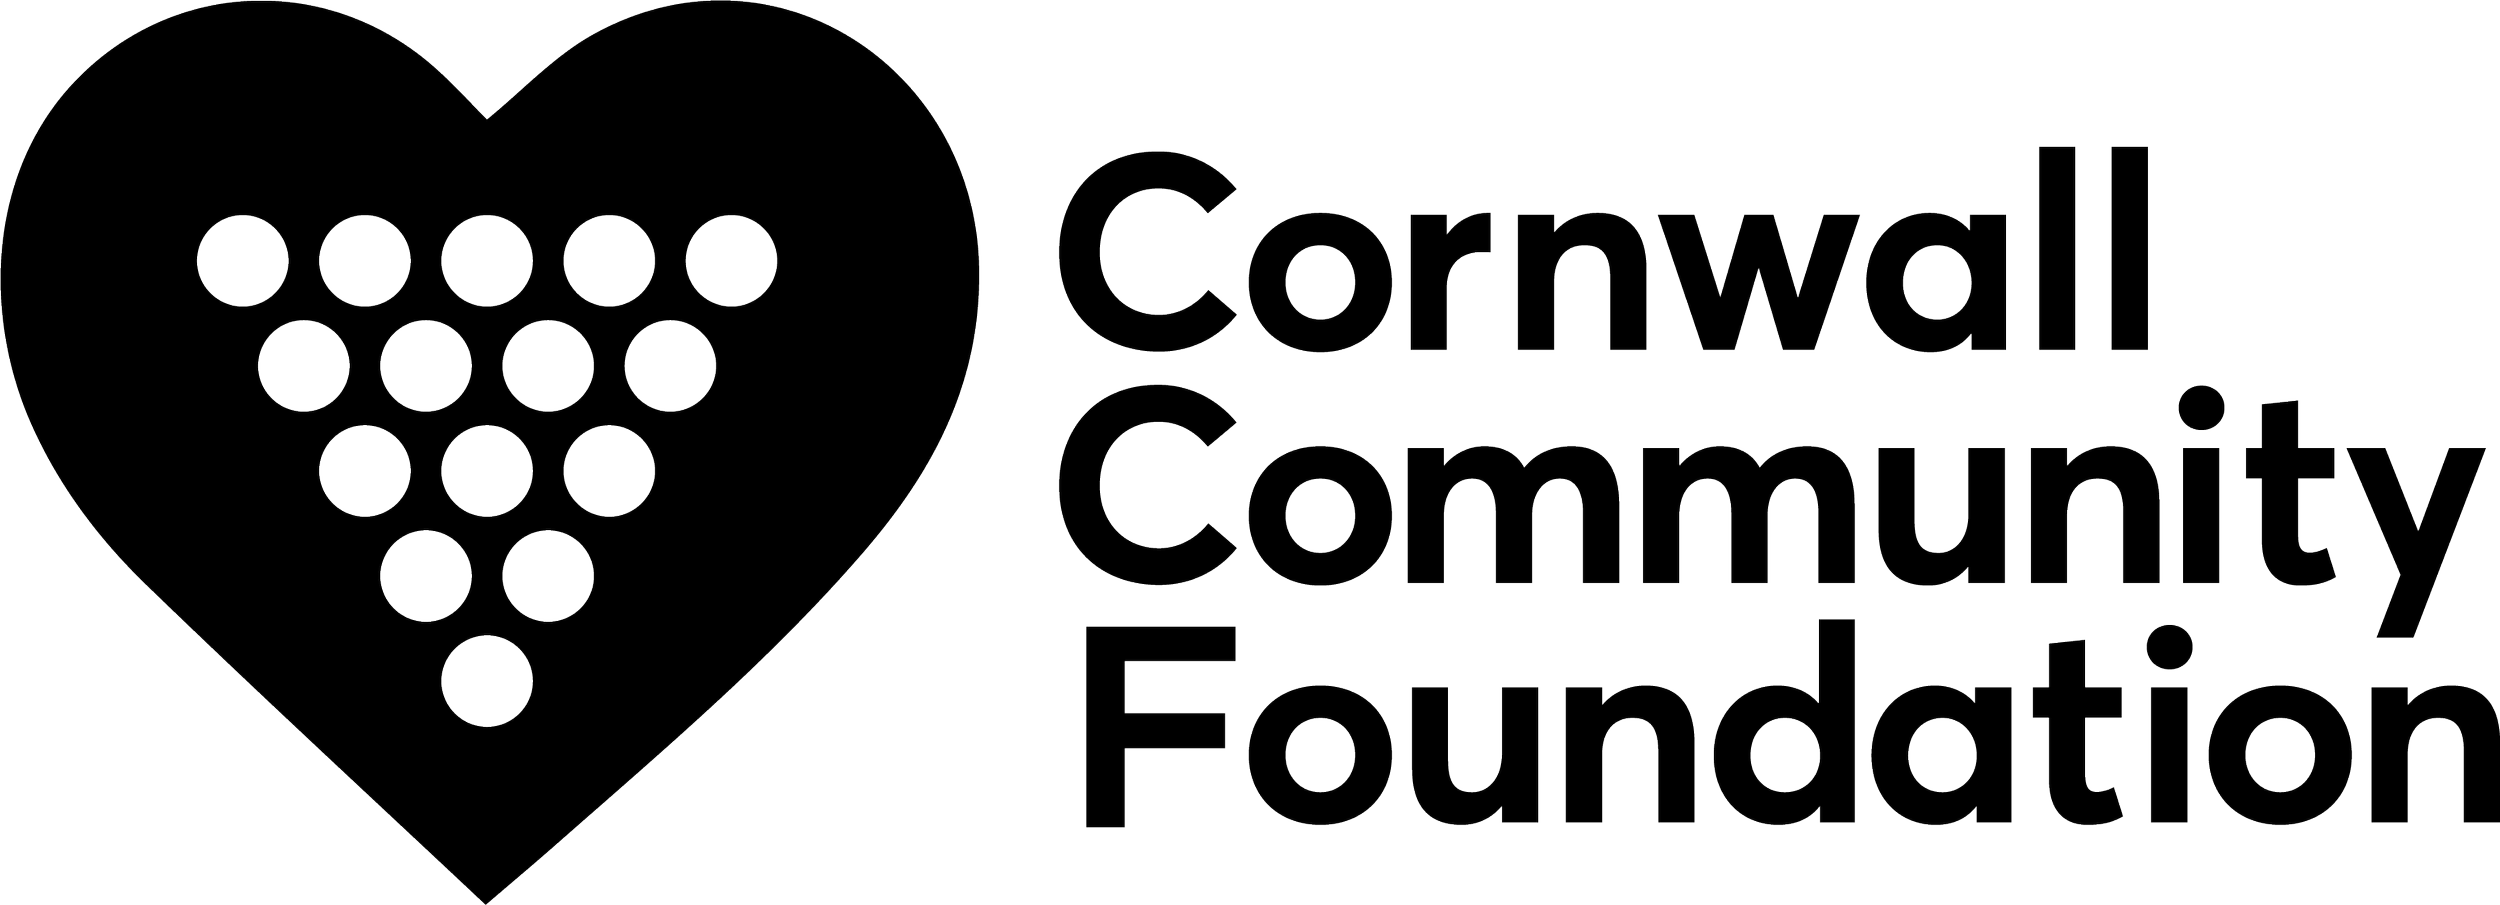 CCF_logo transparent background.png